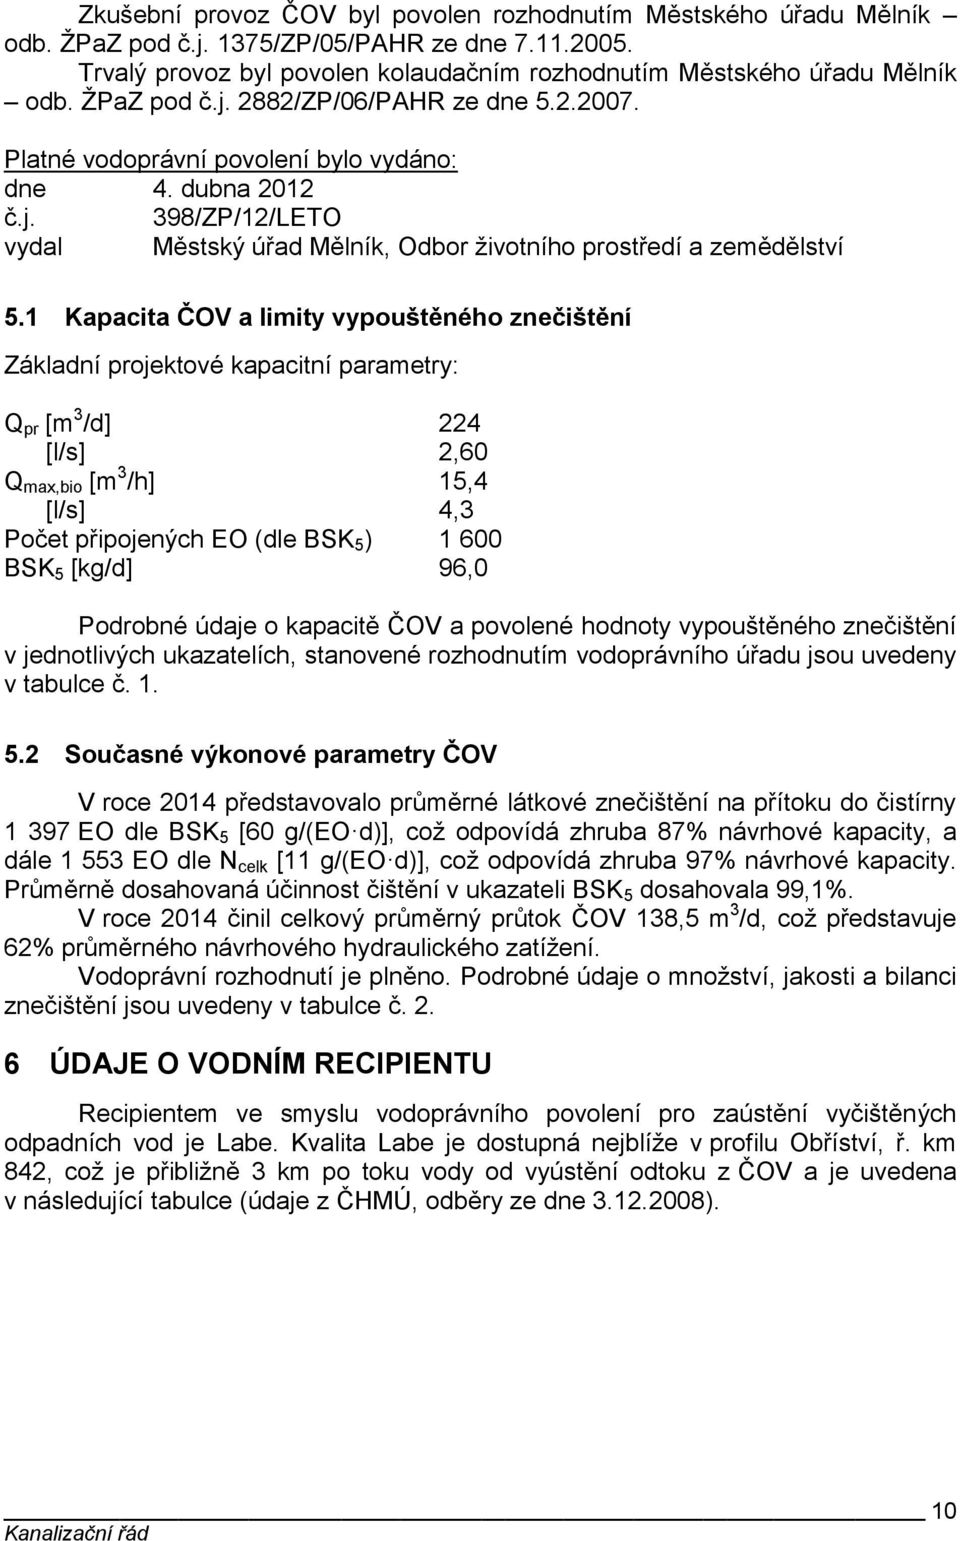 1 Kapacita ČOV a limity vypouštěného znečištění Základní projektové kapacitní parametry: Q pr [m 3 /d] 224 [l/s] 2,60 Q max,bio [m 3 /h] 15,4 [l/s] 4,3 Počet připojených EO (dle BSK 5 ) 1 600 BSK 5